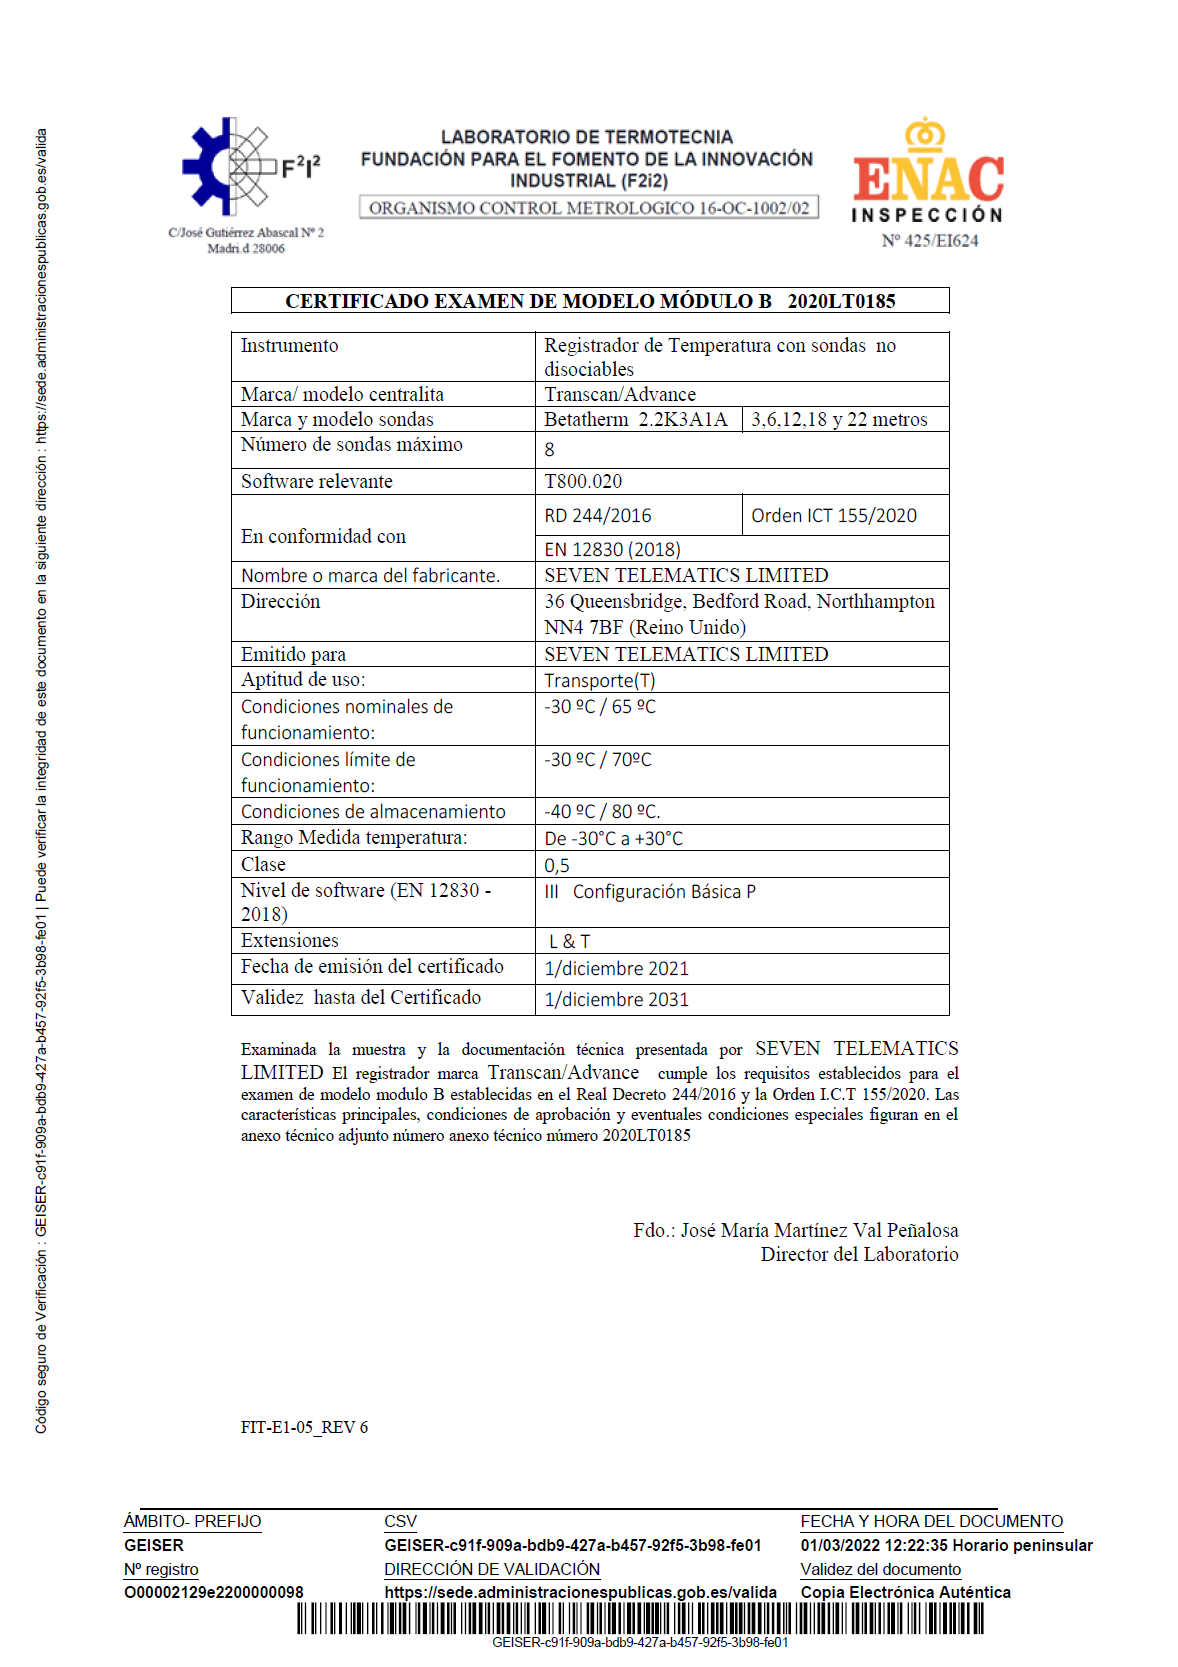 Certificado examen de modelo módulo B nº 2020LT0185